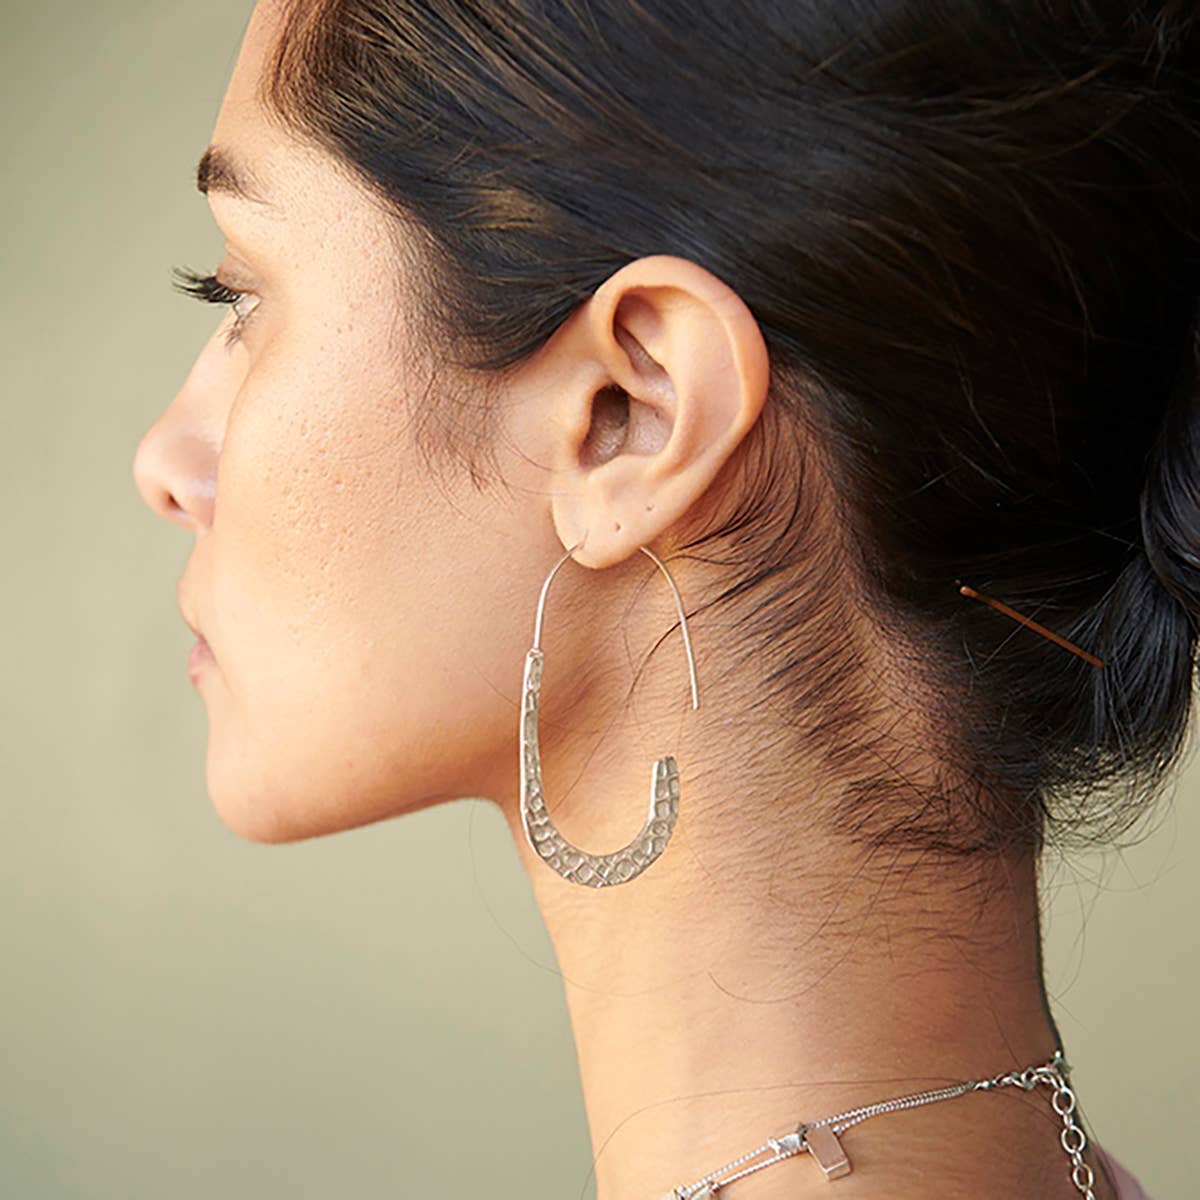 Textured Drop Earrings - Silver - Recetas Fair Trade